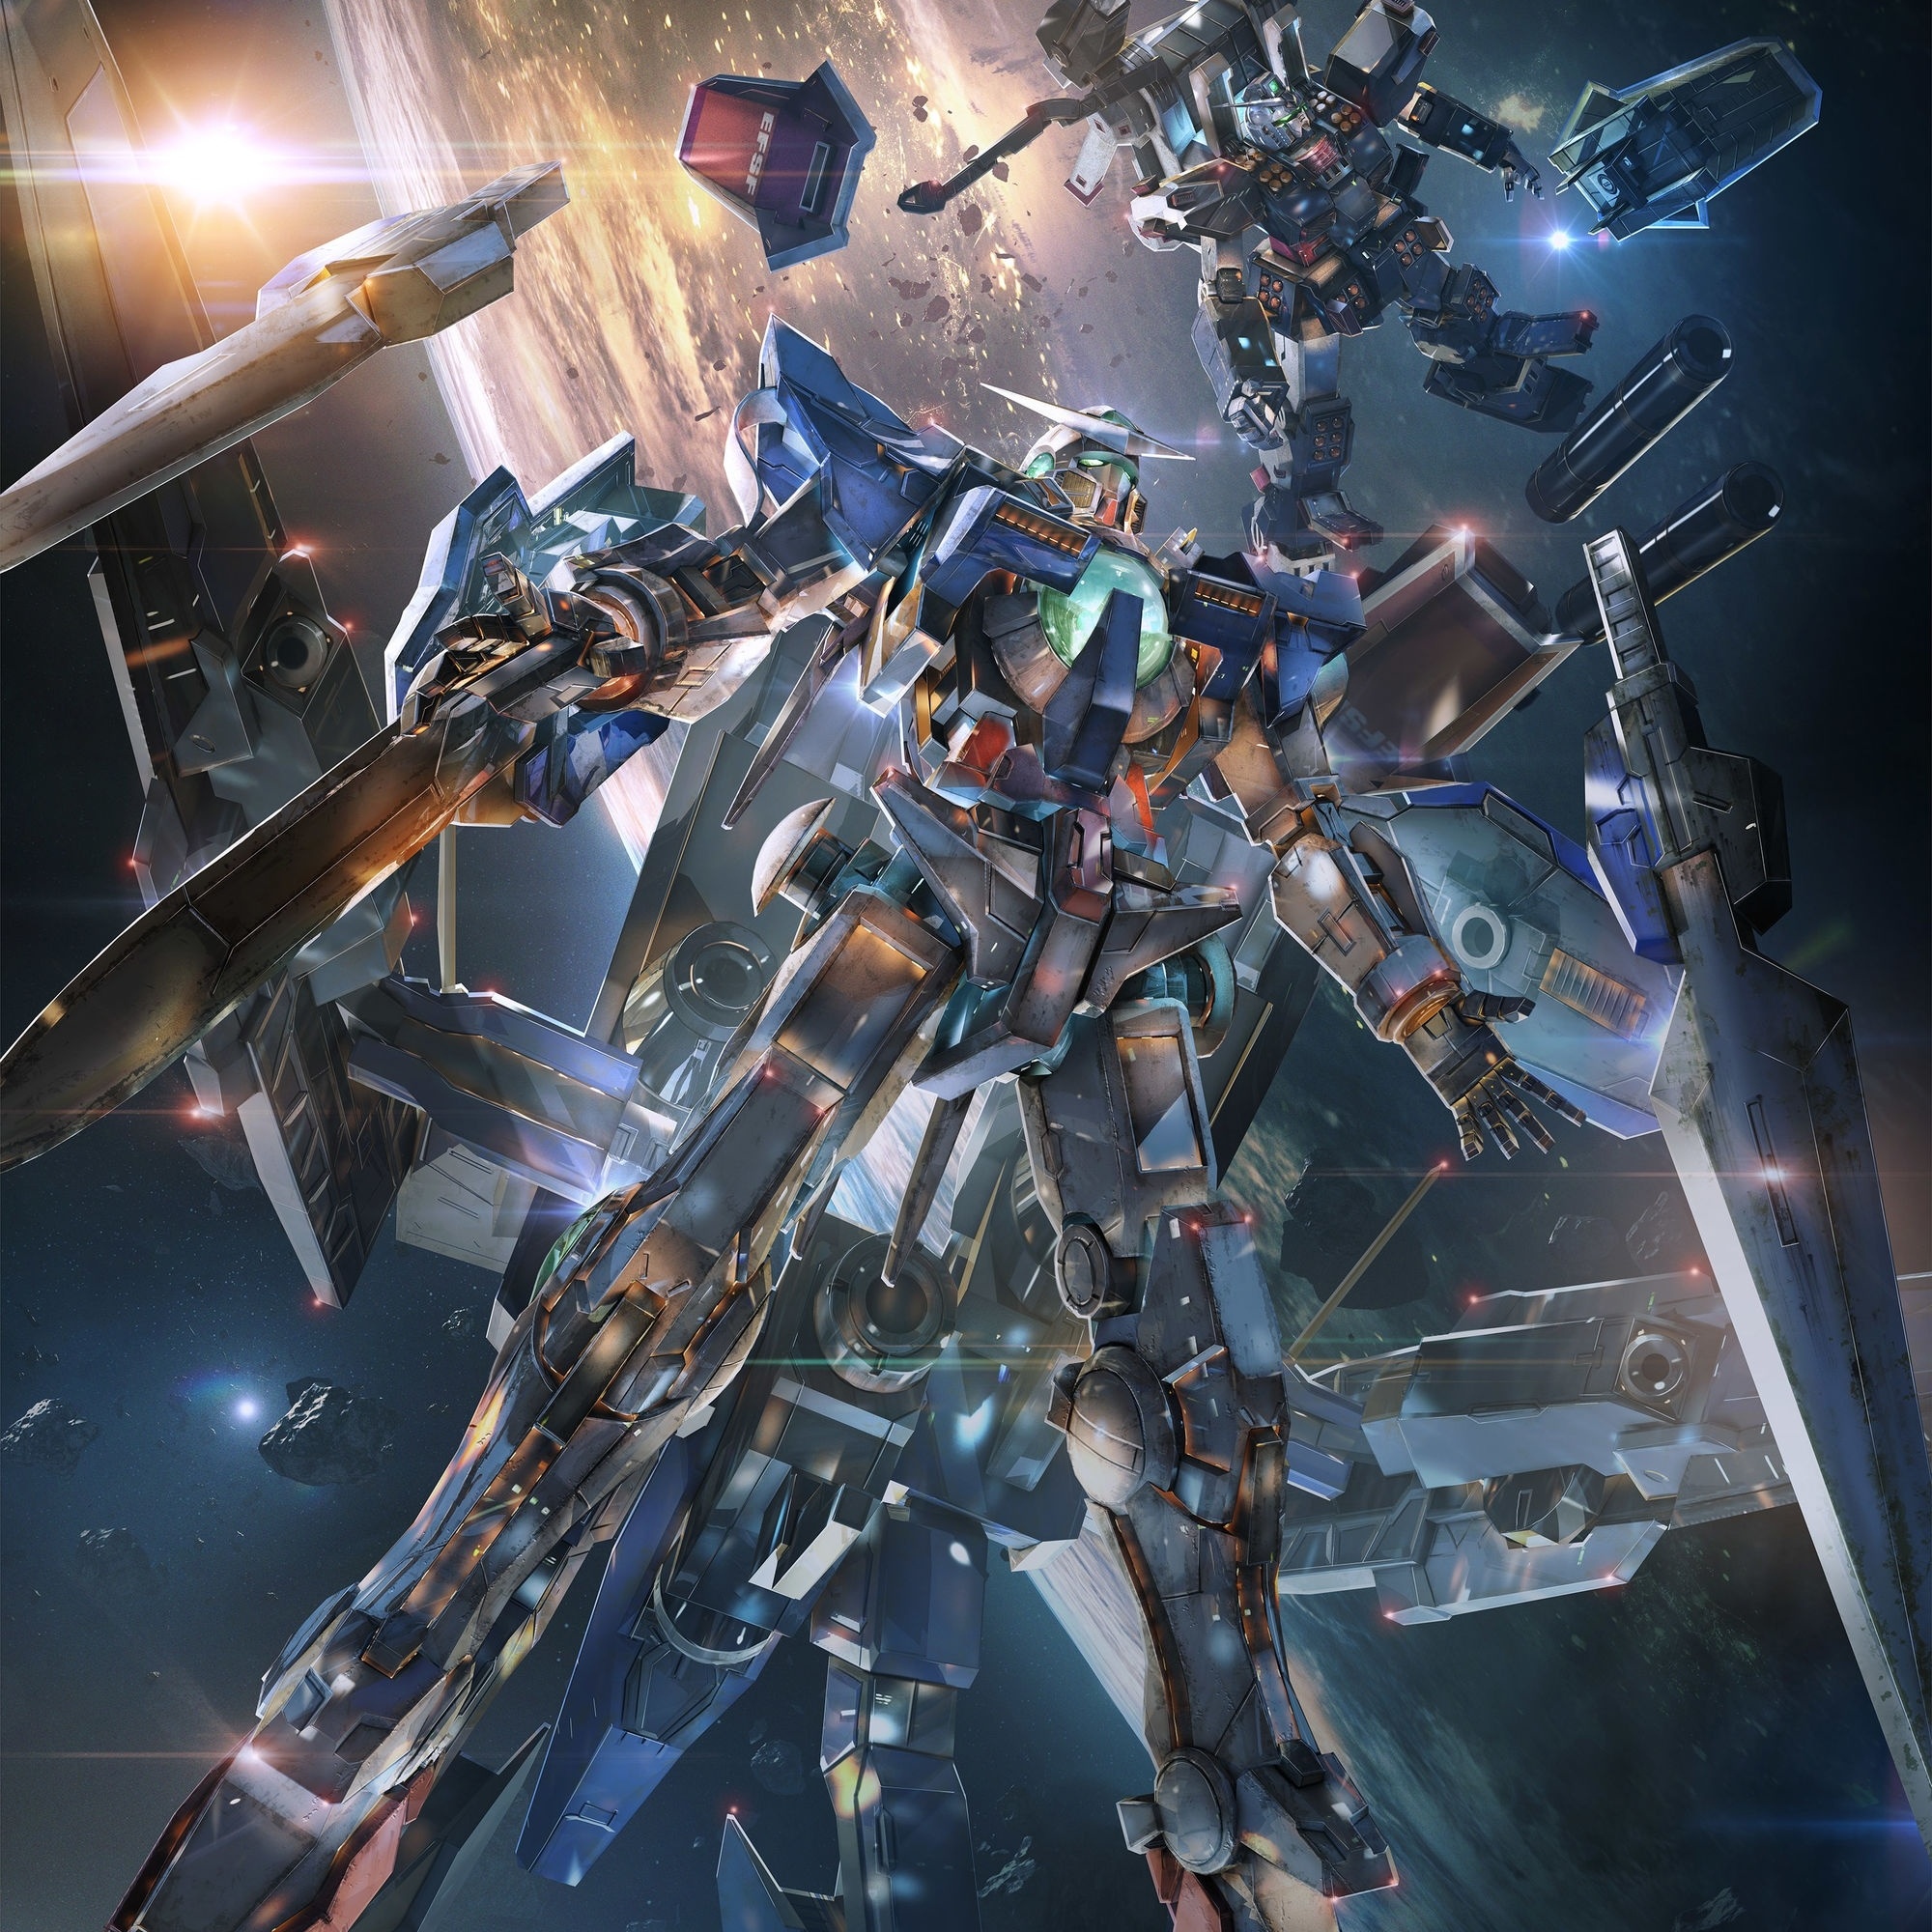 Gundam e esports? Conheça cenário com jogos de mechas, esports